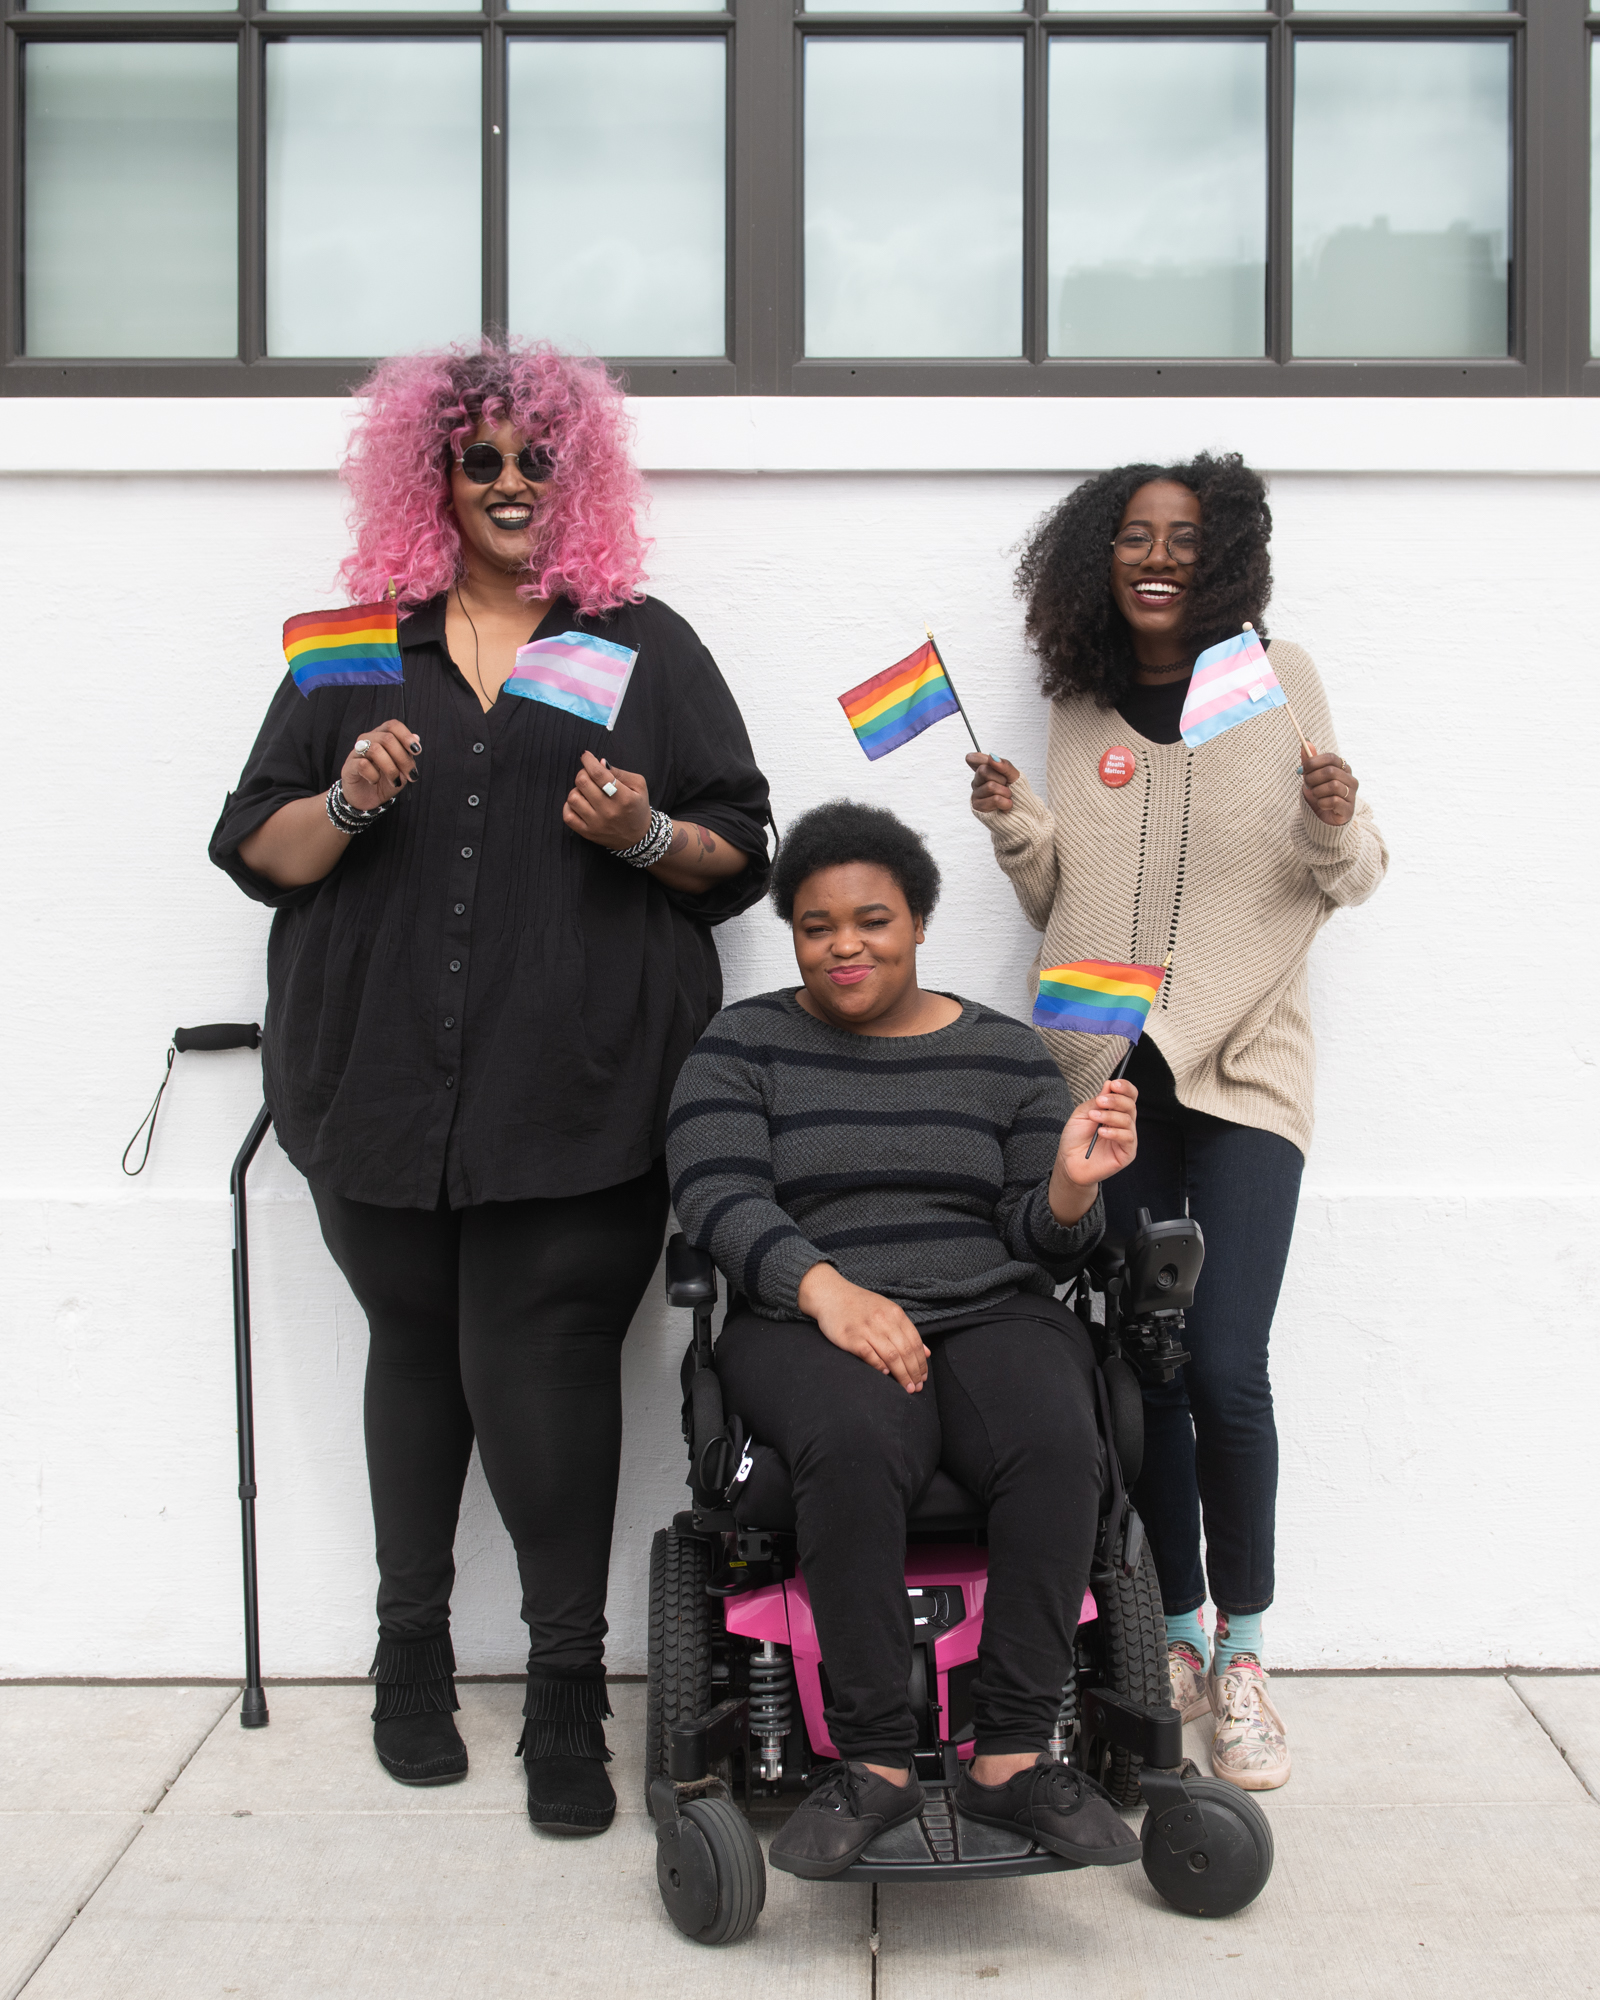 Trois personnes noires et handicapées, dont deux non binaires, sourient et brandissent des mini-drapeaux de la fierté LGBT et transgenre.